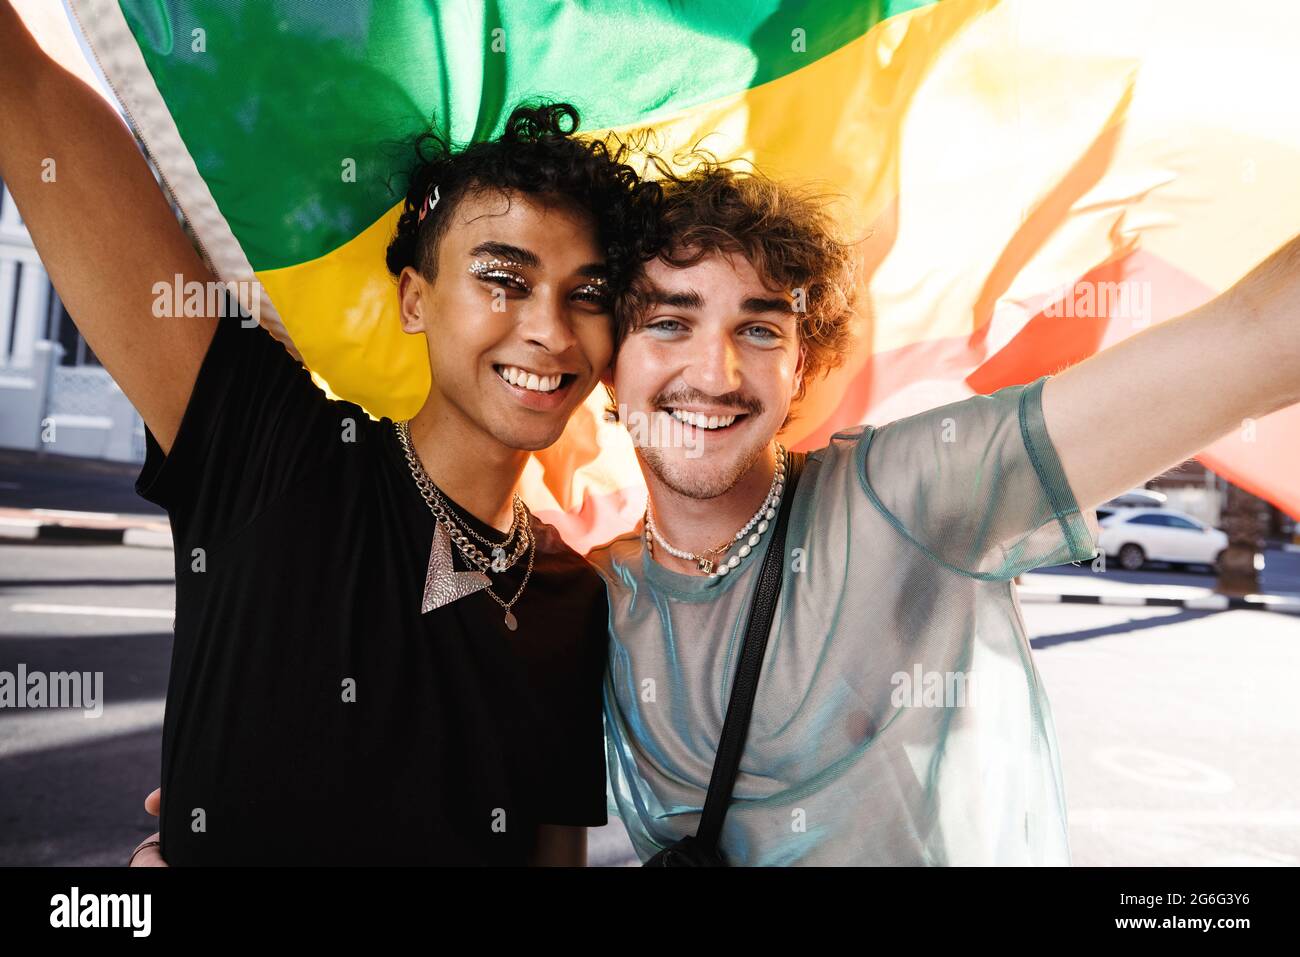 Deux jeunes queer hommes célébrant la fierté gay. Deux jeunes hommes gais souriant gaiement tout en levant un drapeau arc-en-ciel lors d'une parade de fierté gay. Deux membres du Banque D'Images